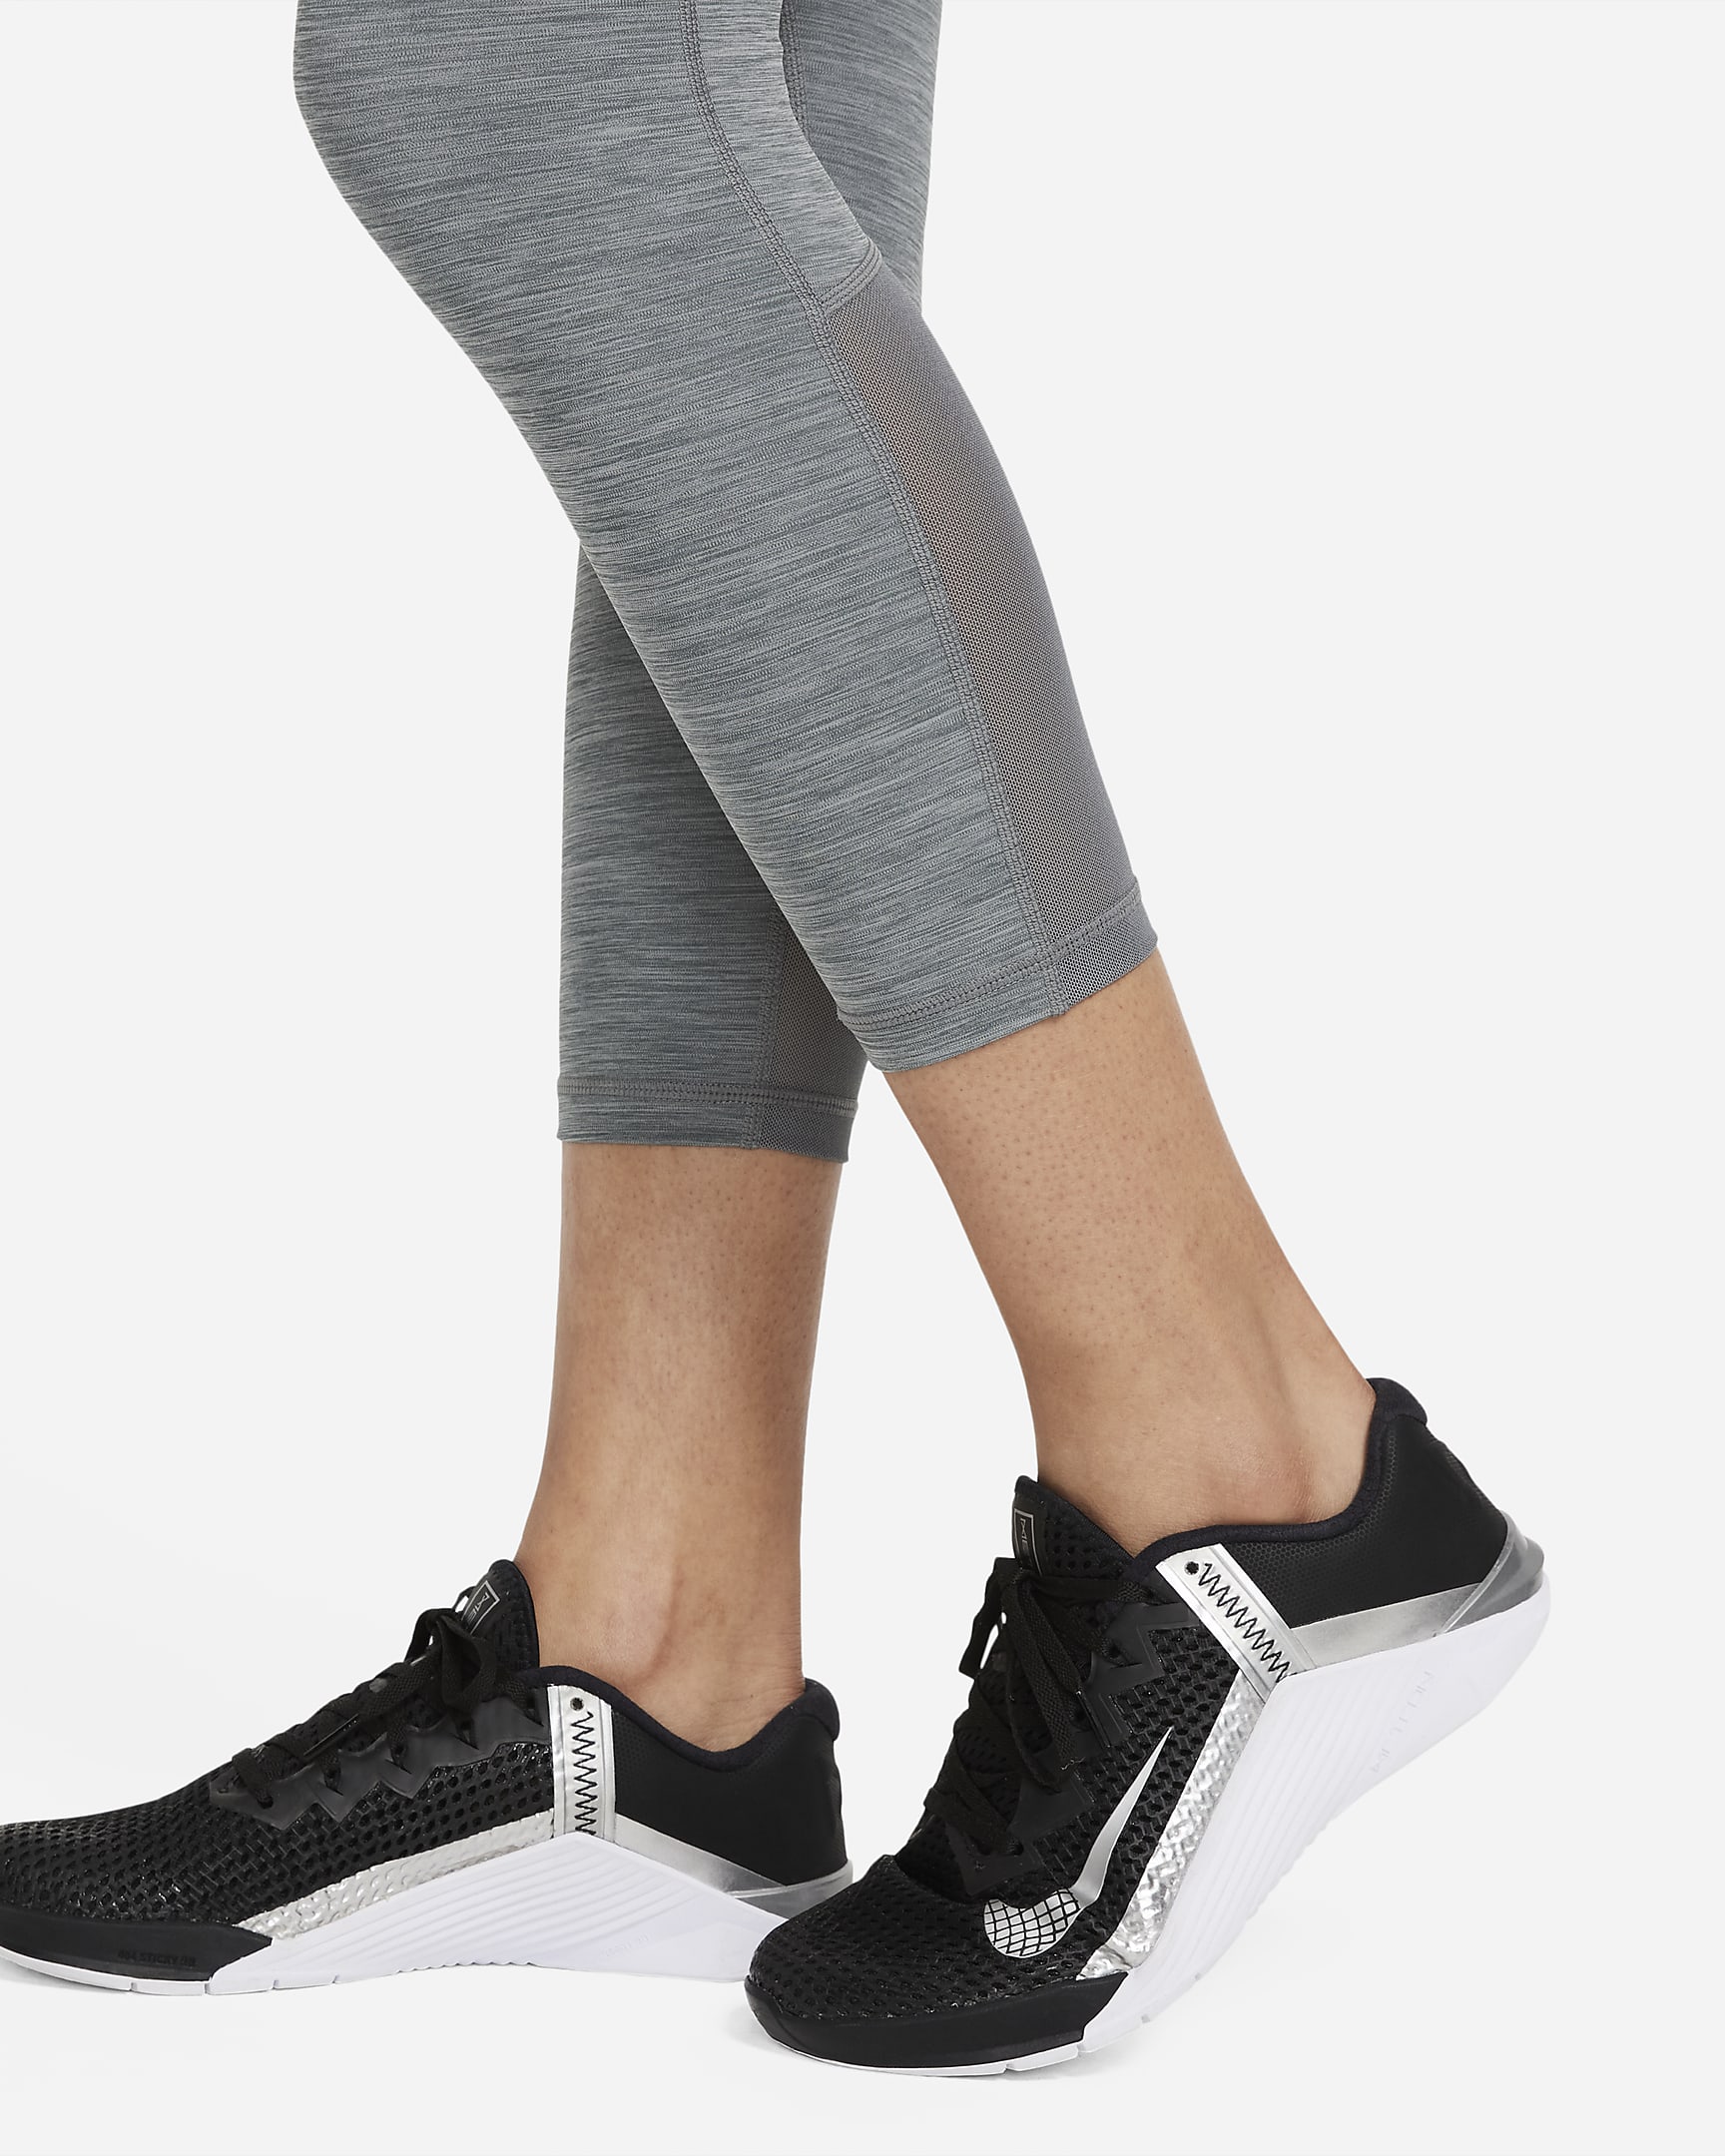 Nike Pro 365 Women's Mid-Rise Cropped Mesh Panel Leggings. Nike.com